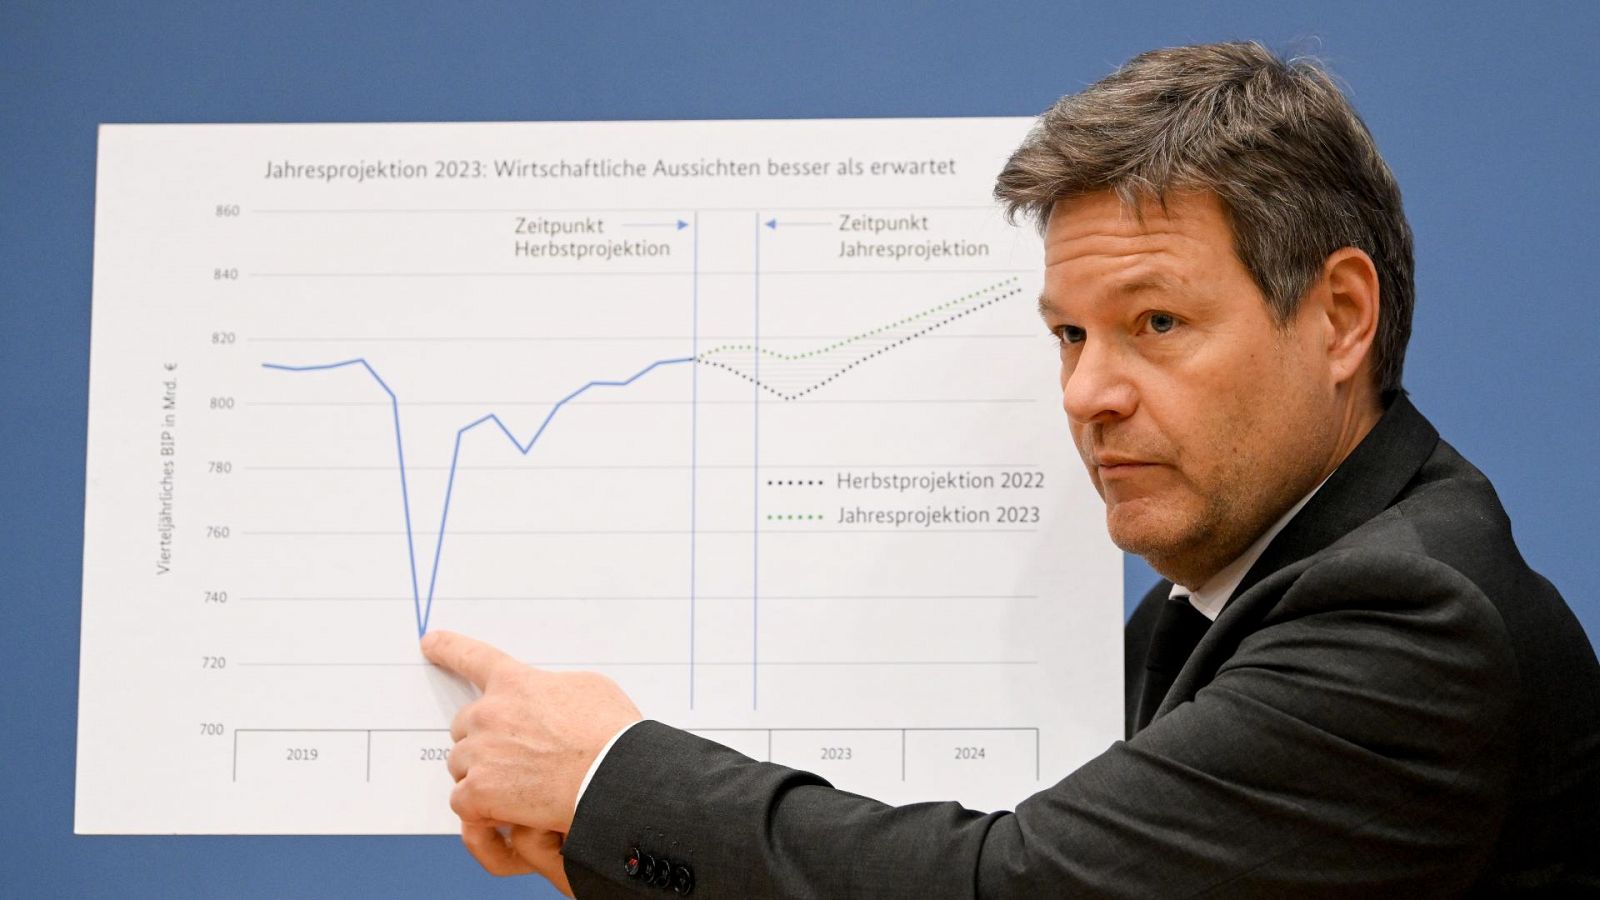 El ministro de Economía alemán, Robert Habeck, enseña el informe sobre las previsiones económicas para el 2023